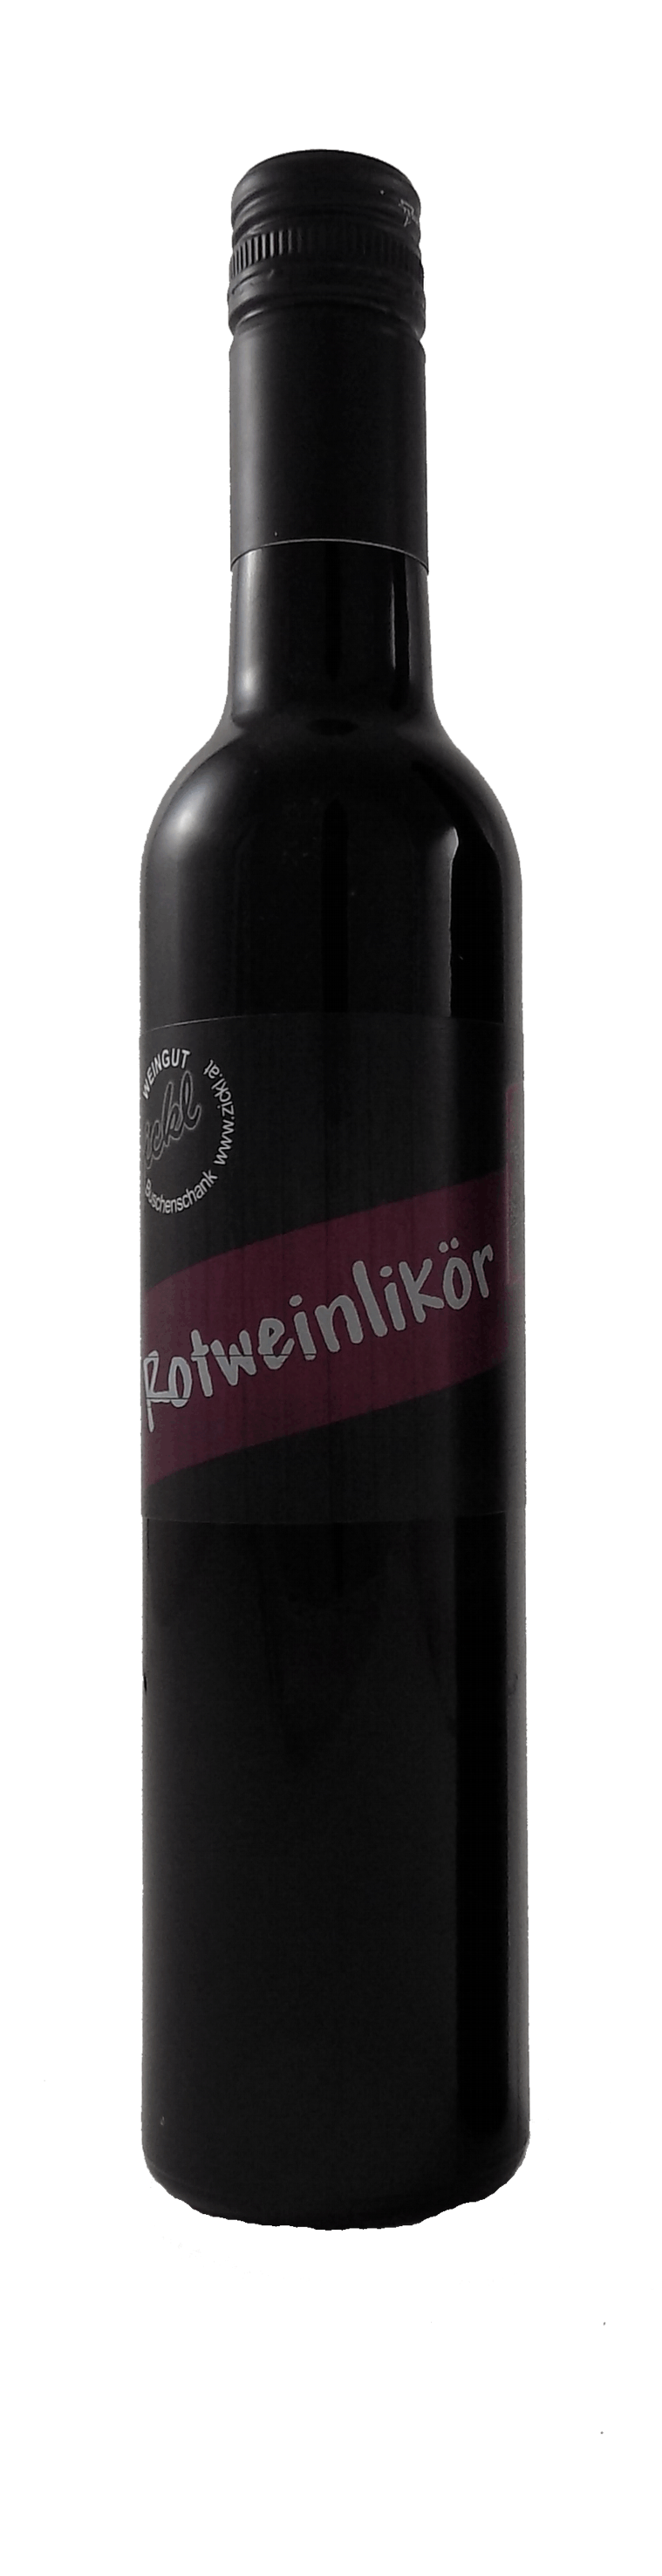 Rotweinlikör aus dem Weingut Zickl